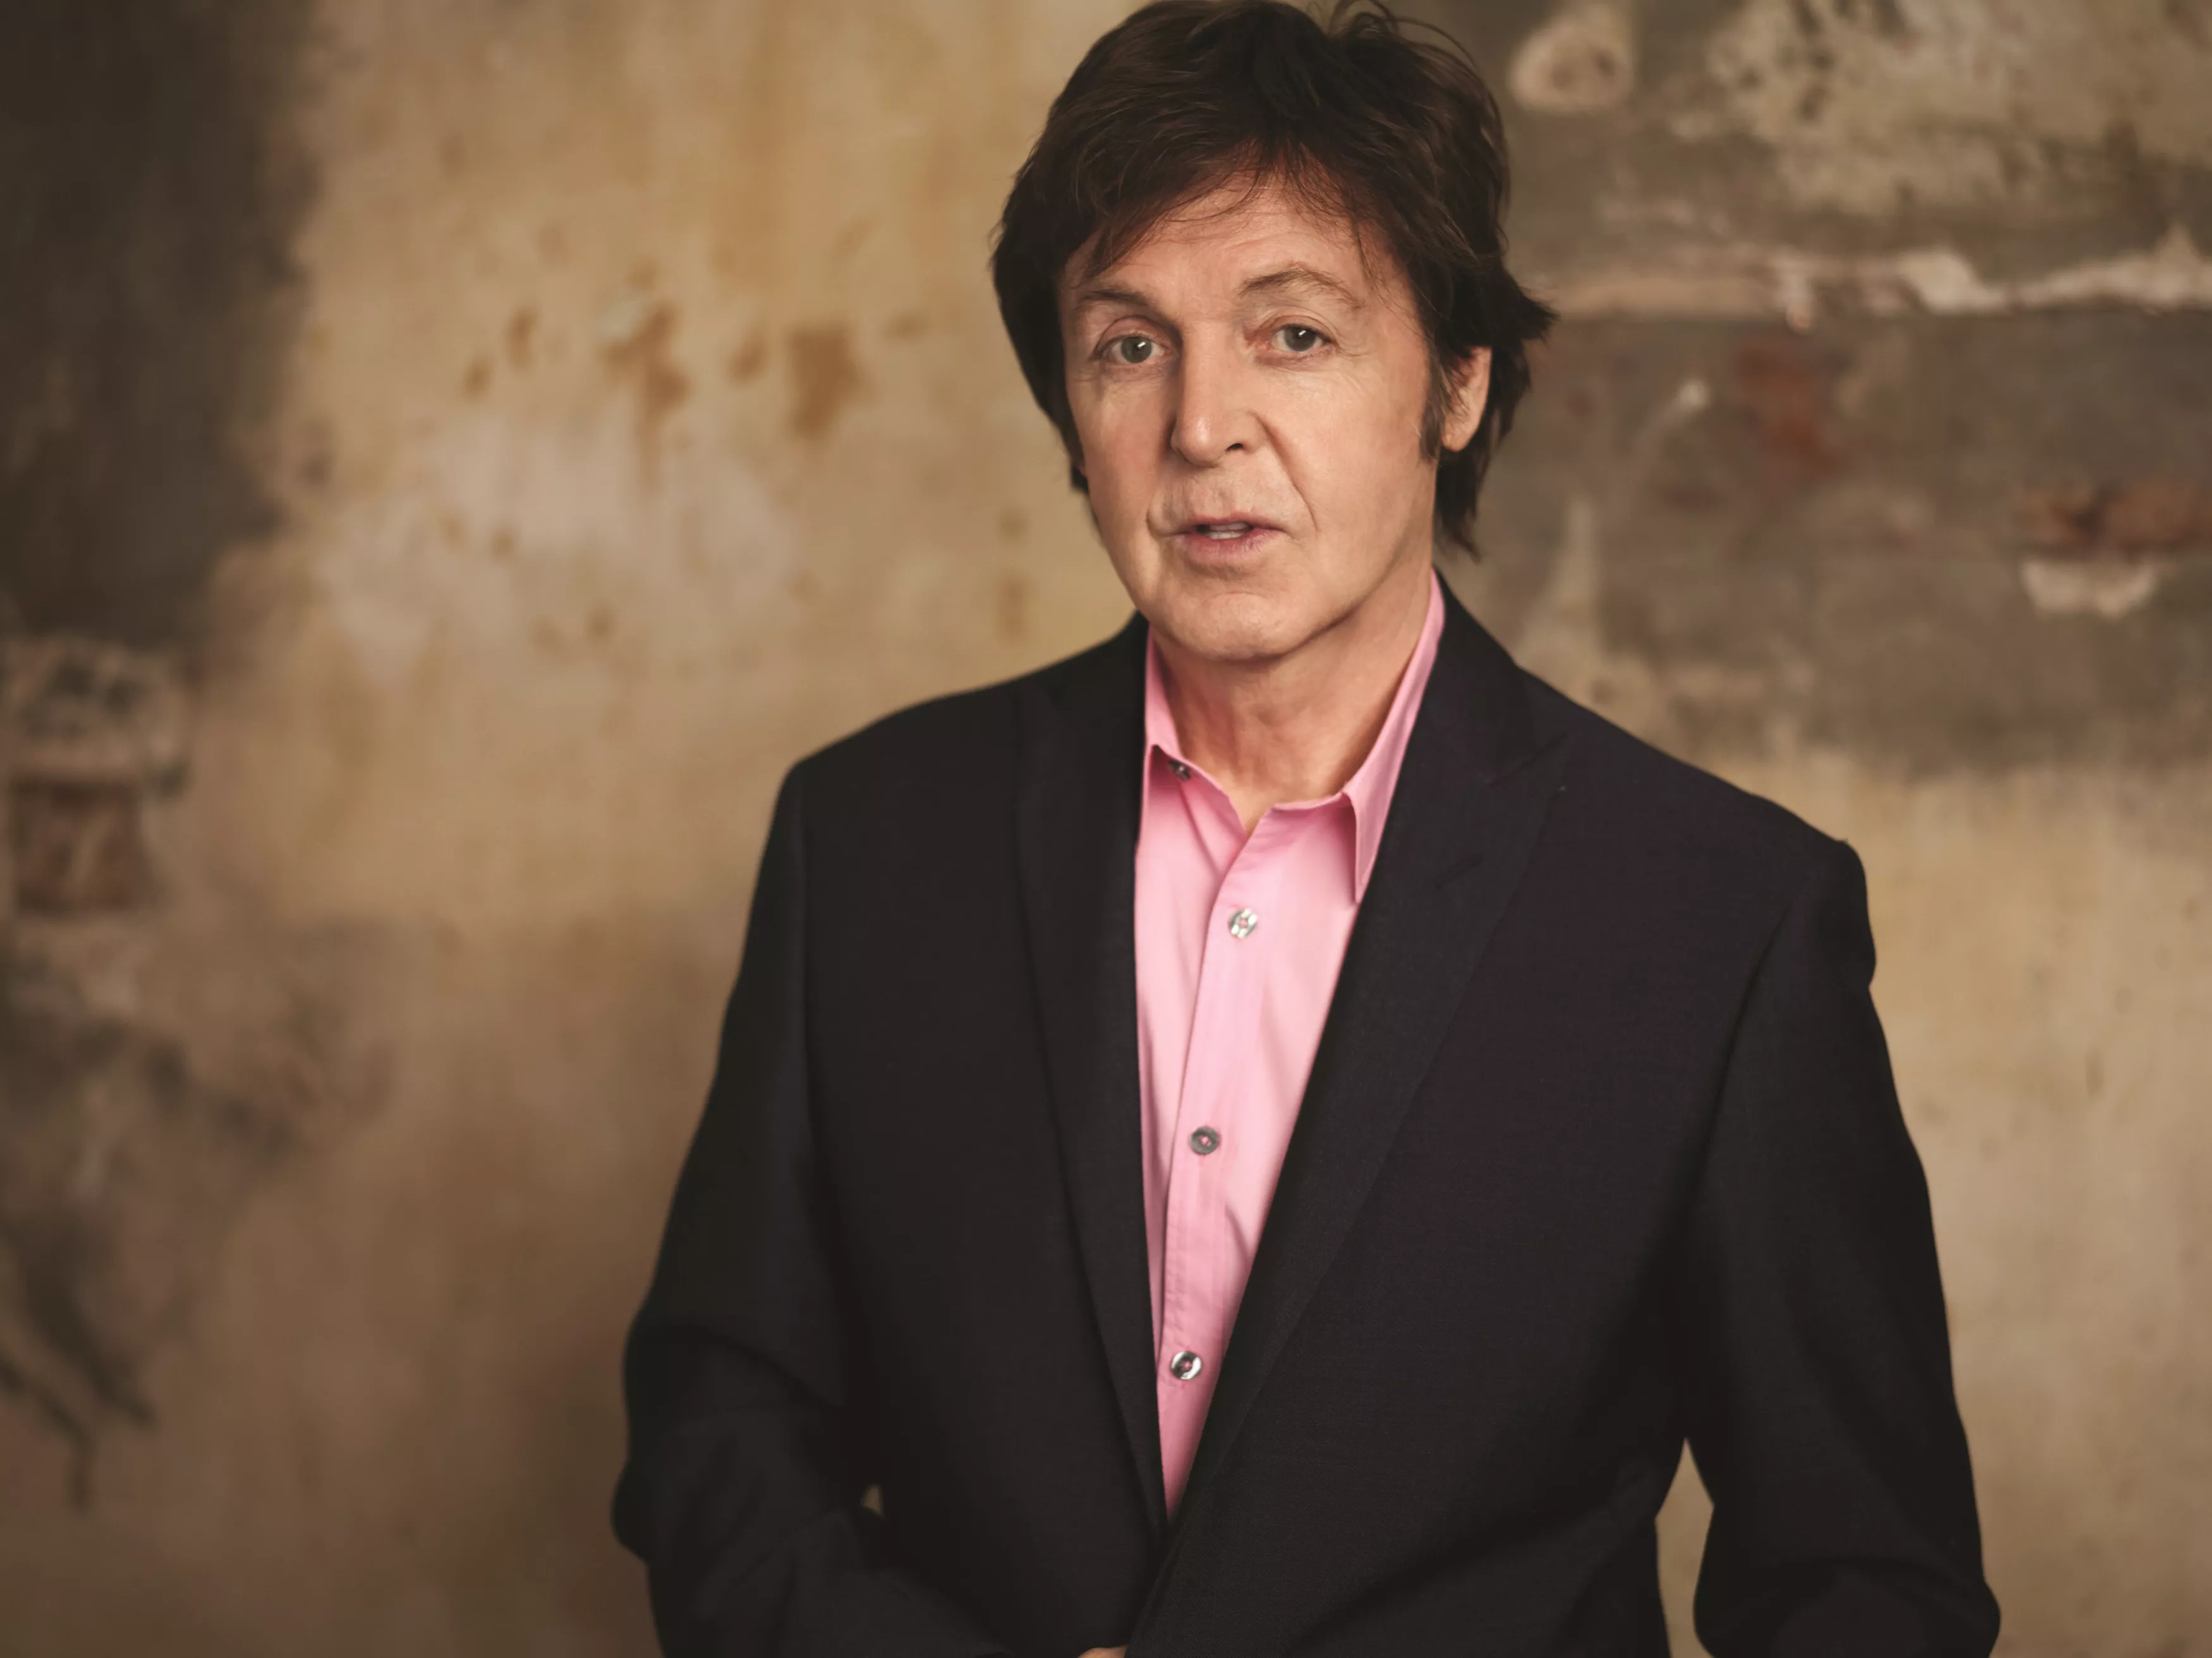 Ny singel + albumdetaljer fra Paul McCartney